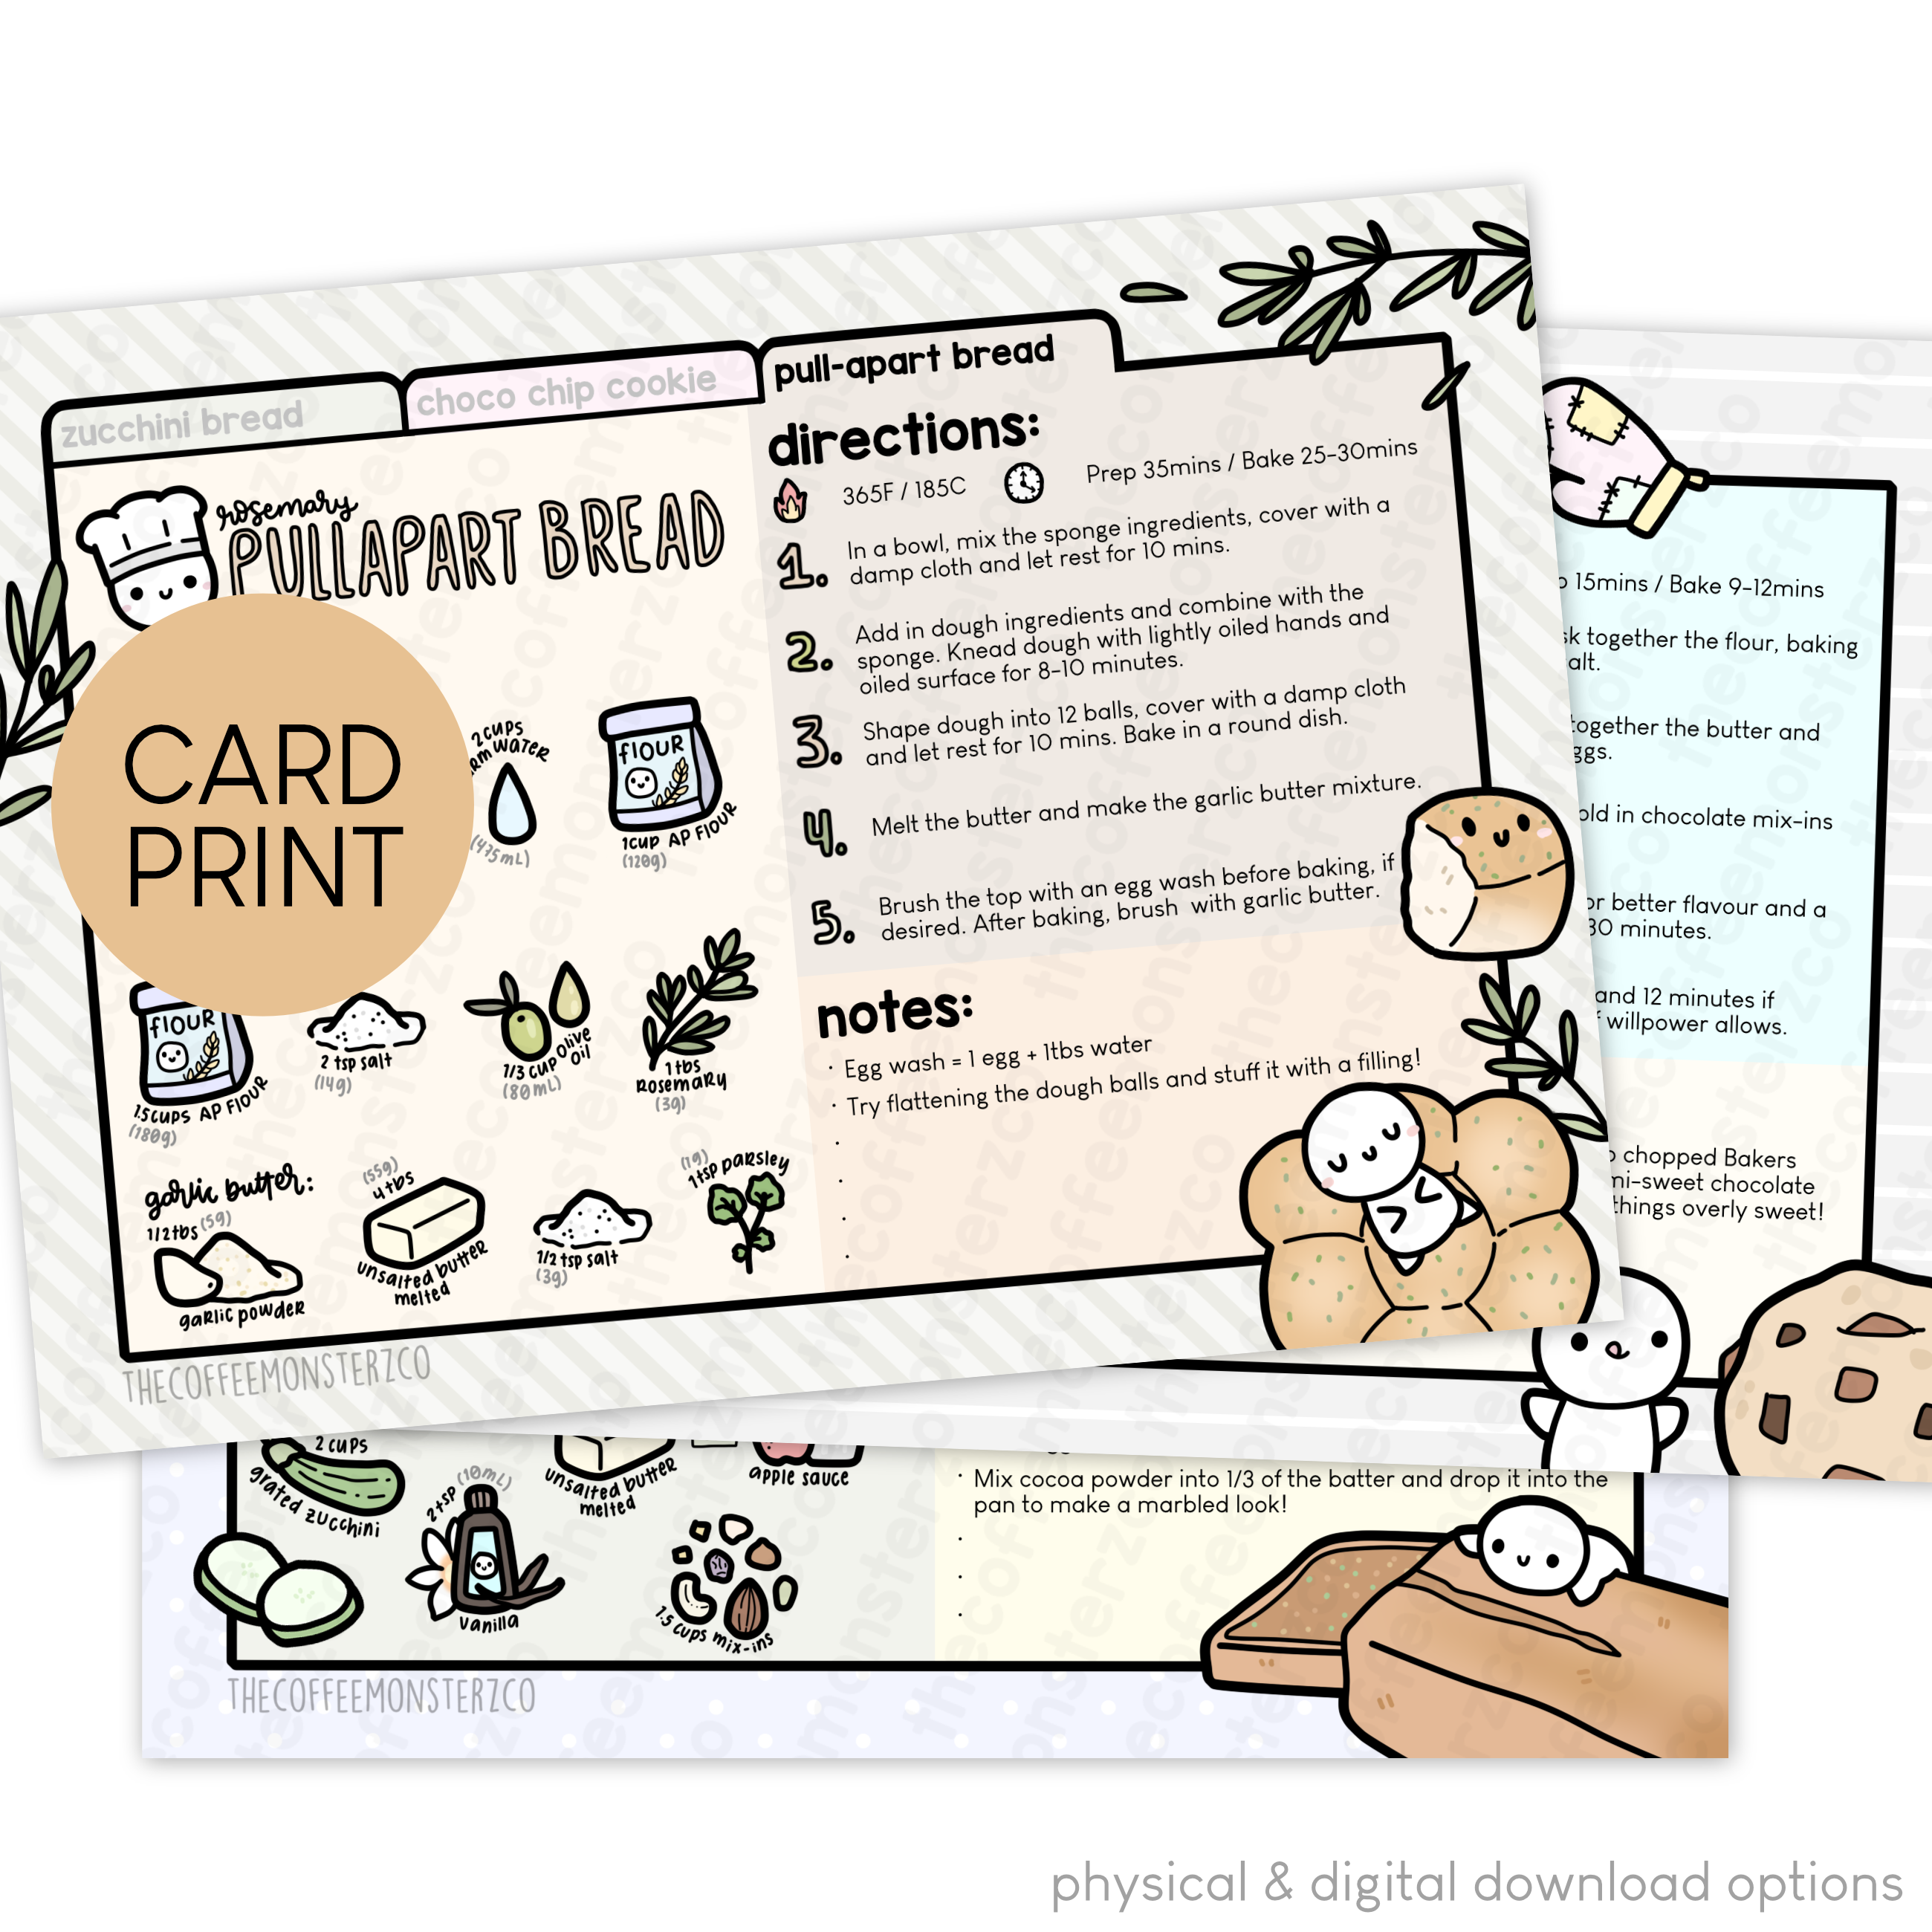 Recipe Cards - Card Print